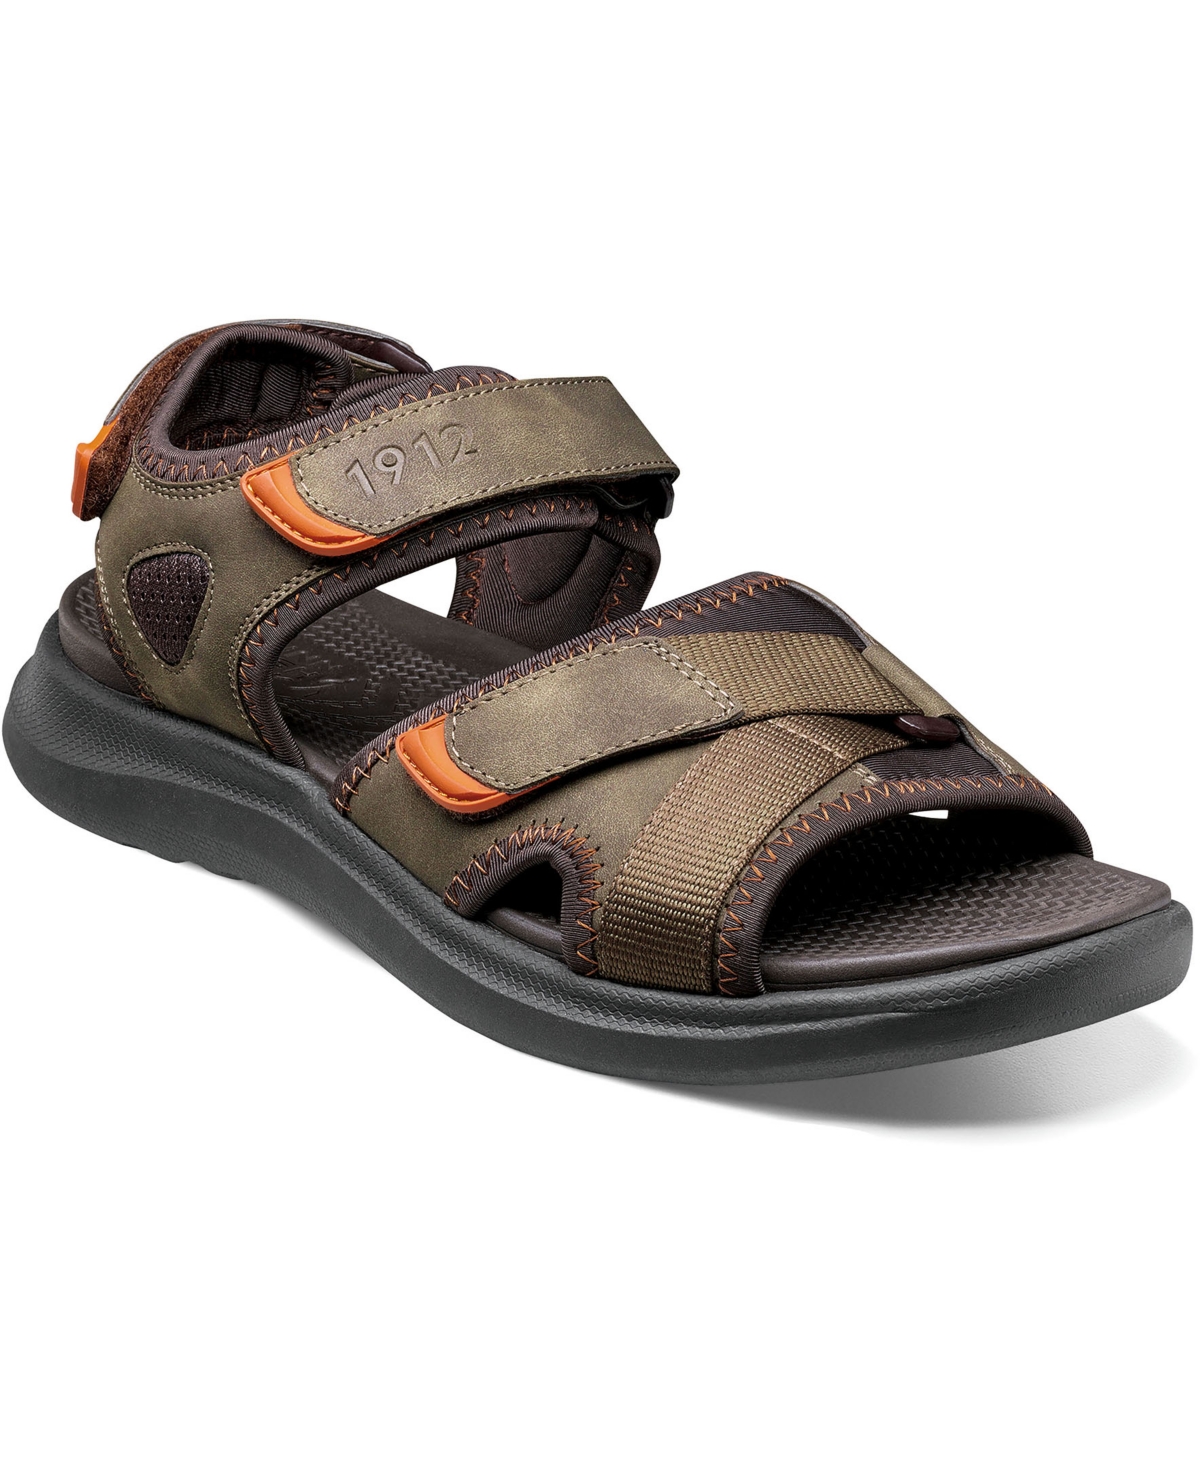 Men's Rio Vista River Slide Sandals - Olive